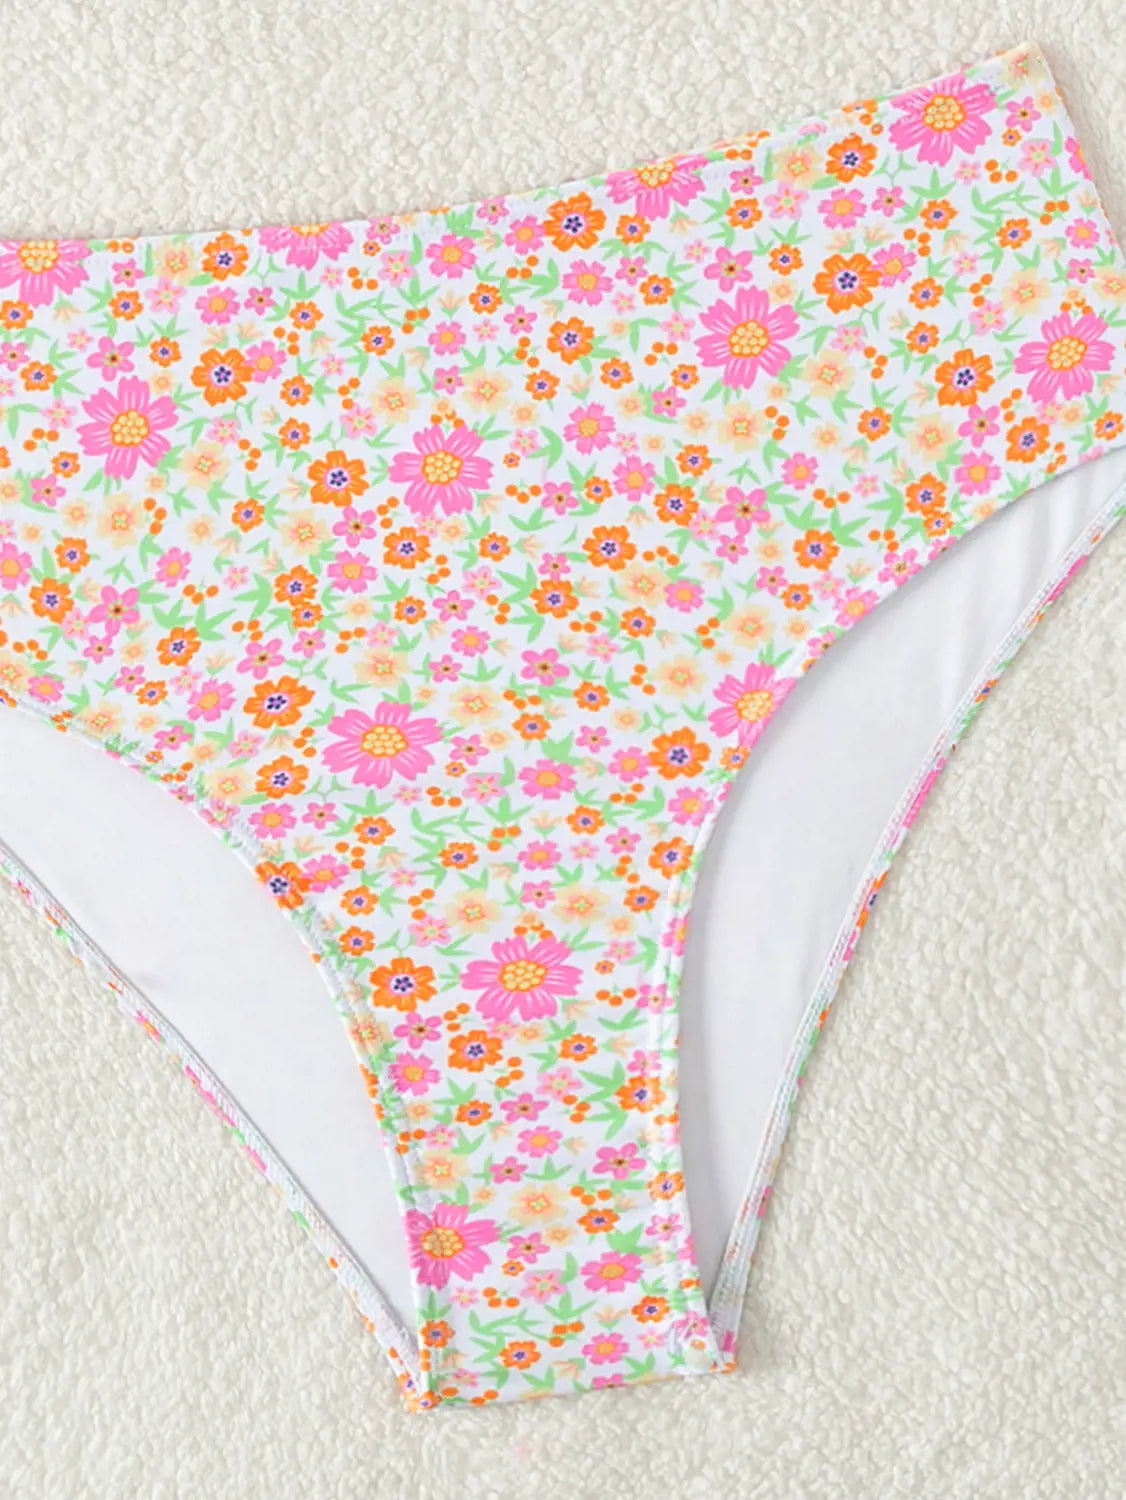 Boho Blossom High-waist Bikini - Embrace The Summer Vibes